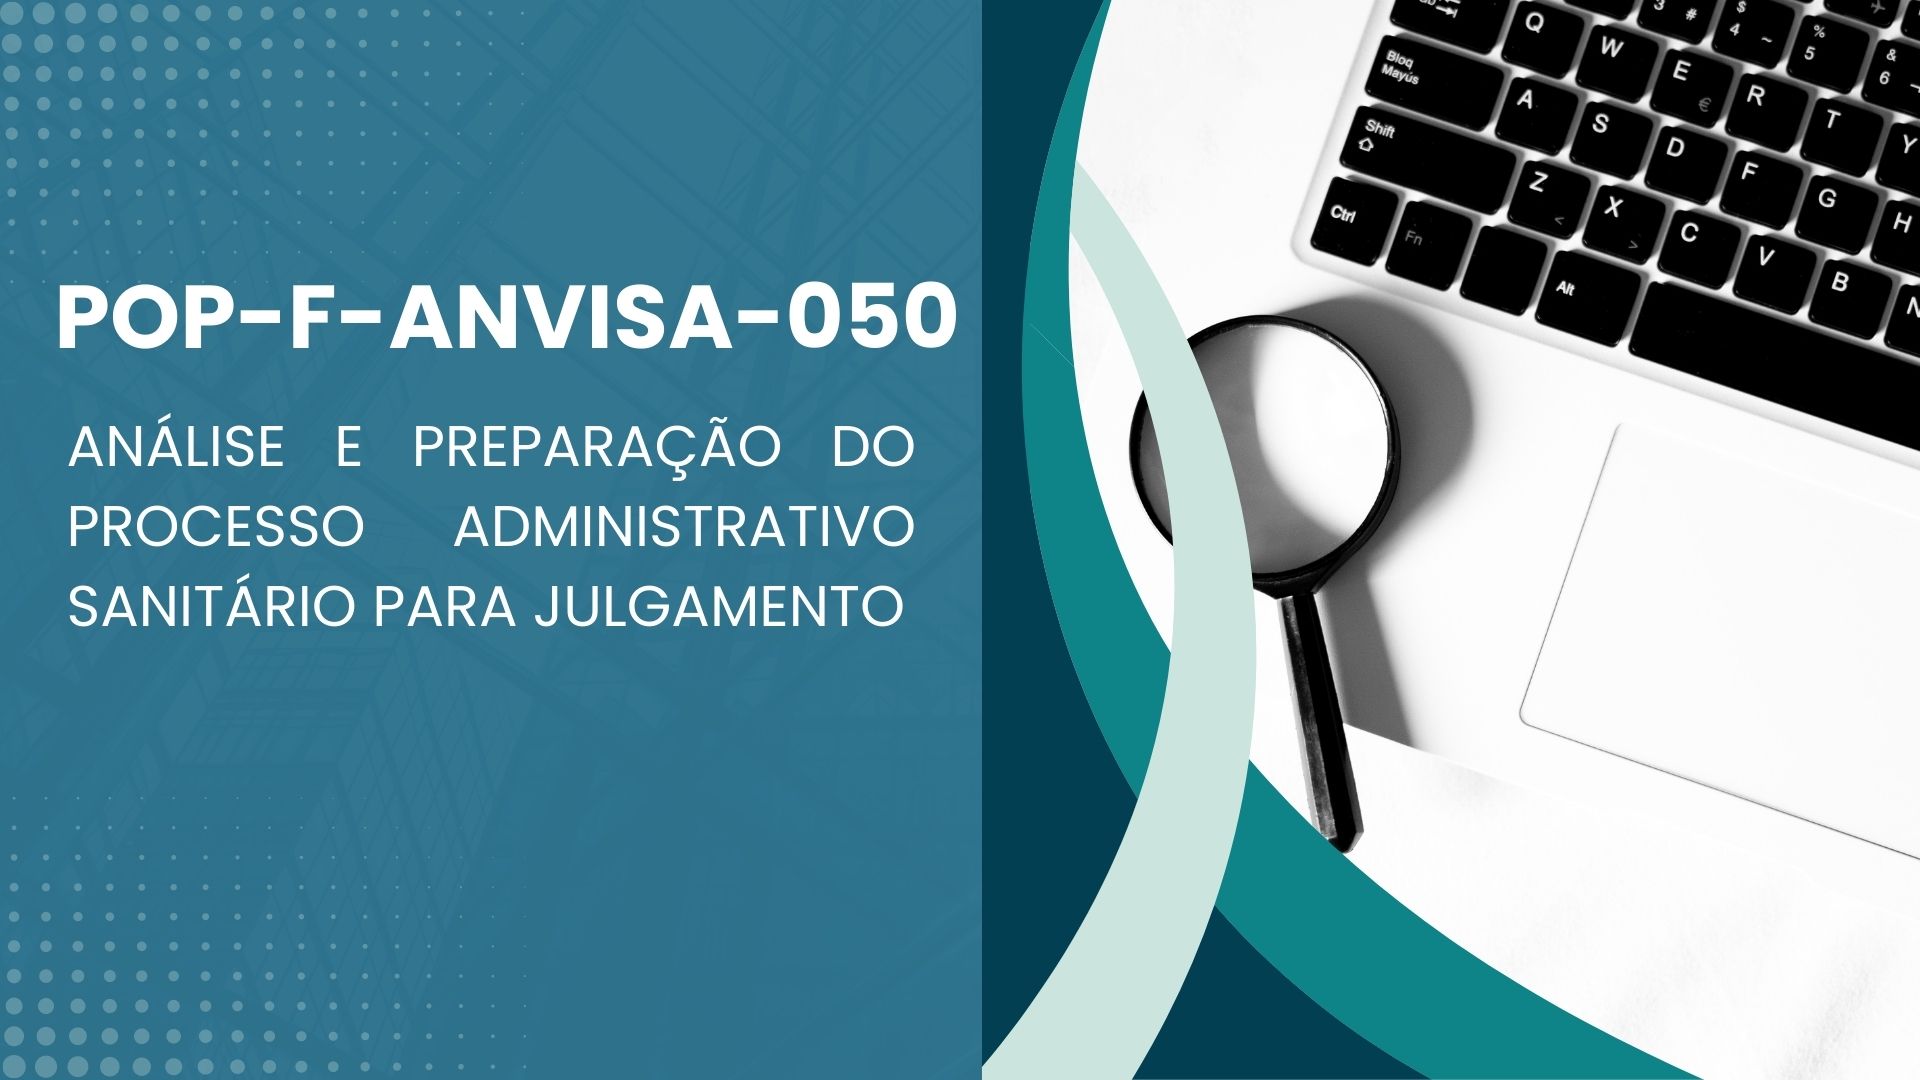 POP-F-ANVISA-050 - ANÁLISE E PREPARAÇÃO DO PROCESSO ADMINISTRATIVO SANITÁRIO PARA JULGAMENTO